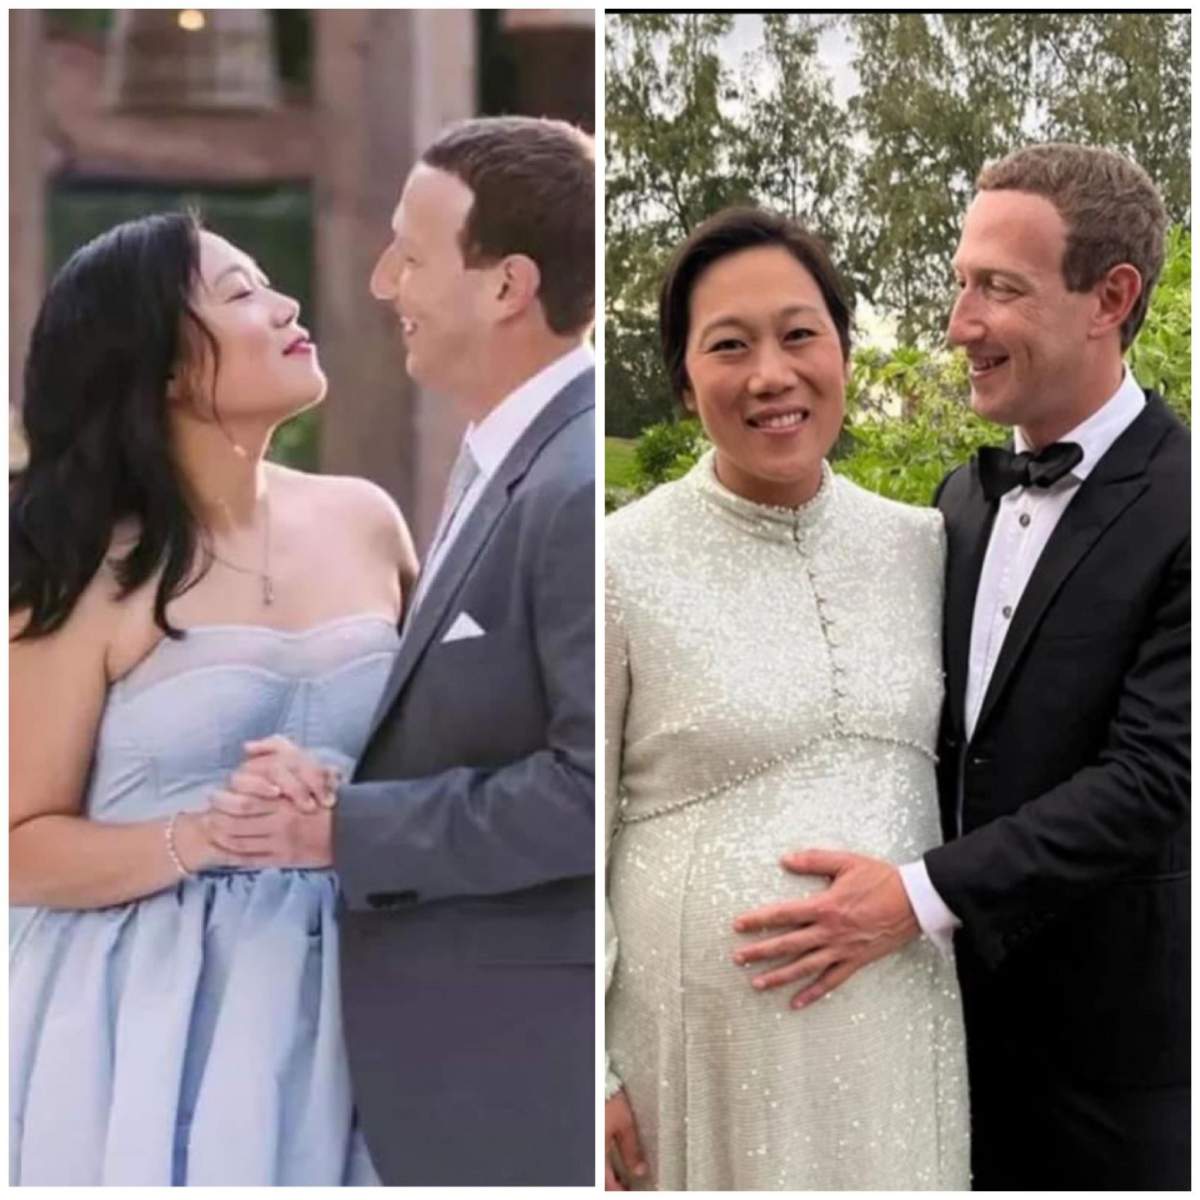 Priscilla Chan, partenera lui Mark Zuckerberg, este însărcinată